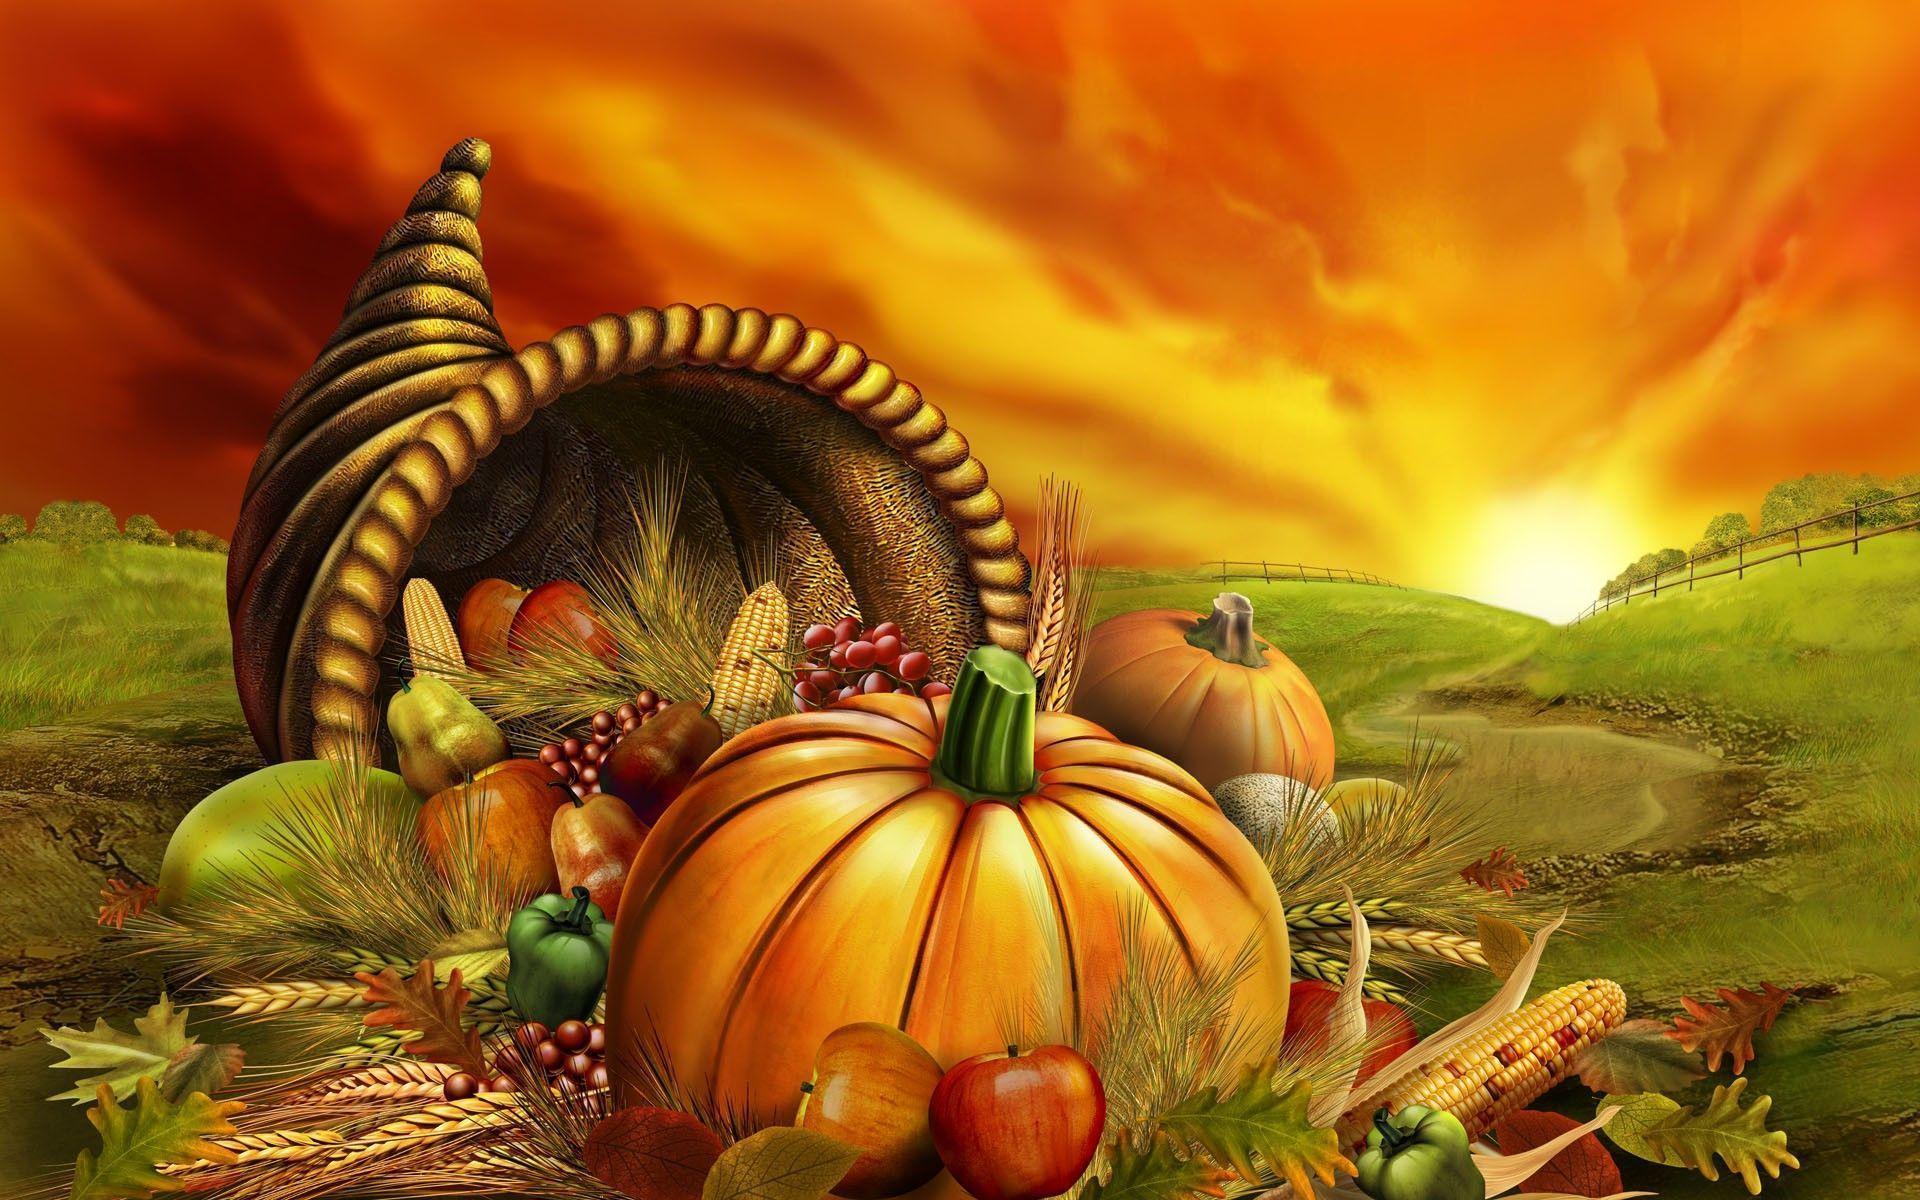 Pumpkin wallpaper desktop background thanksgiving Wide or HD